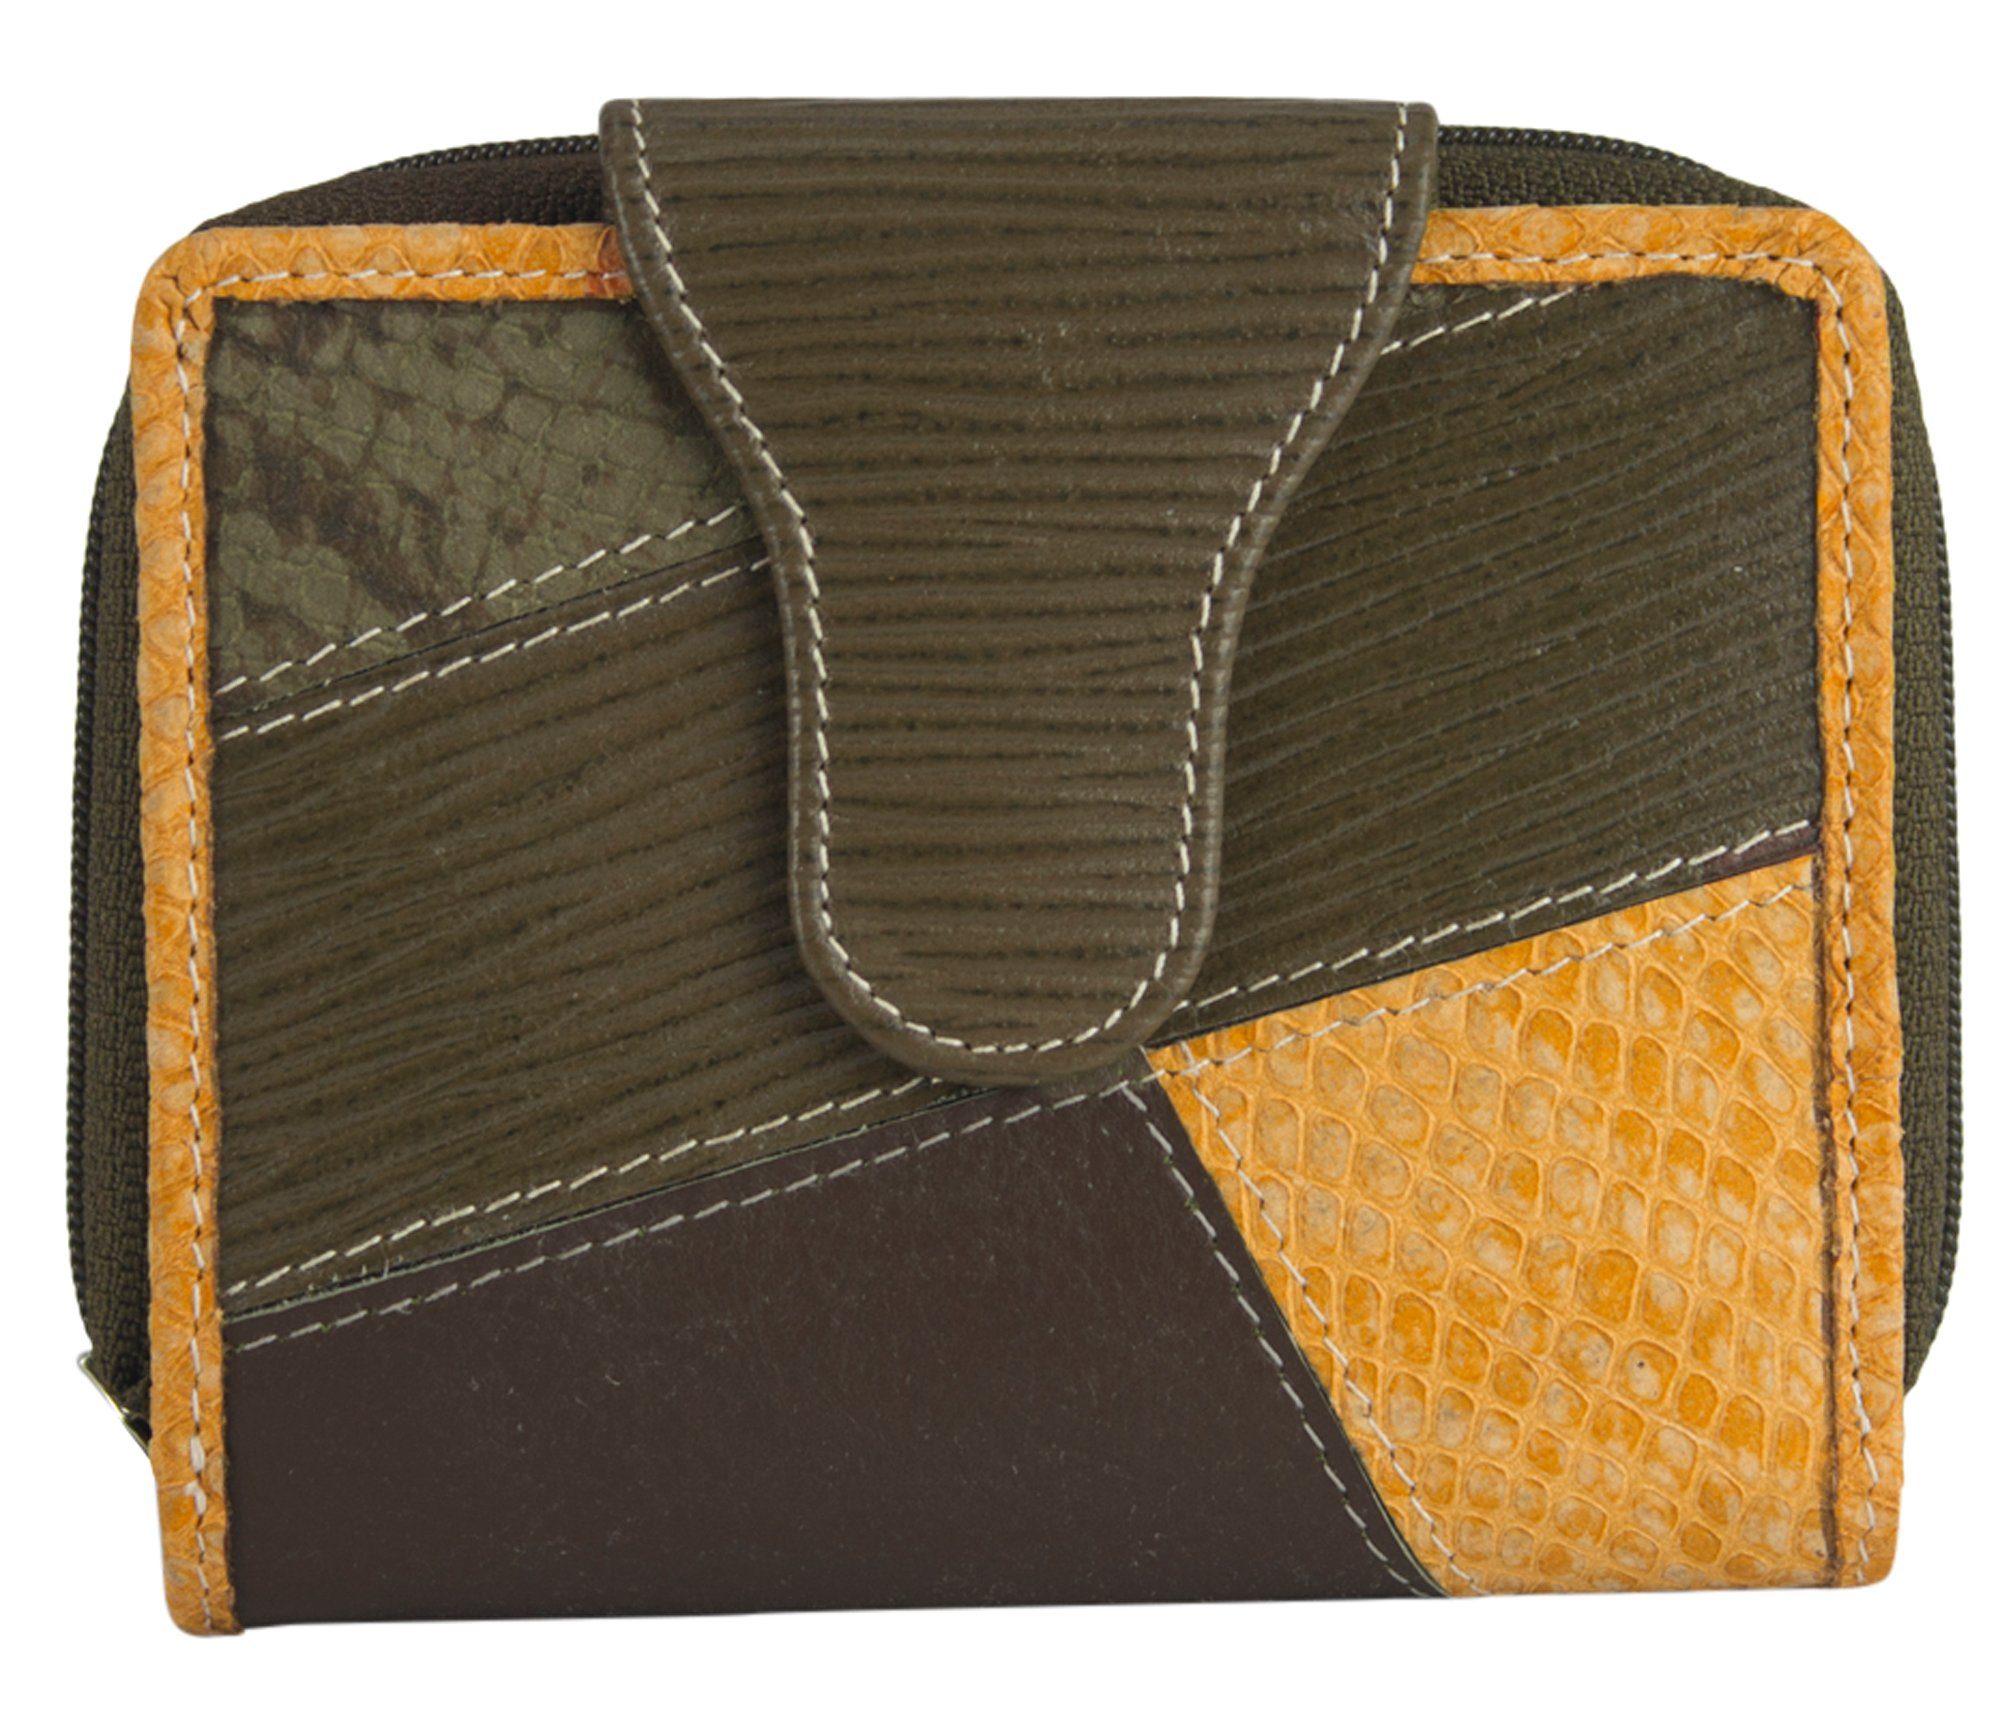 Sunsa Geldbörse echt Leder Geldbörse Damen Geldbeutel Portemonnaie Brieftasche, echt Leder, aus recycelten Lederresten, mit RFID-Schutz Khakigrün